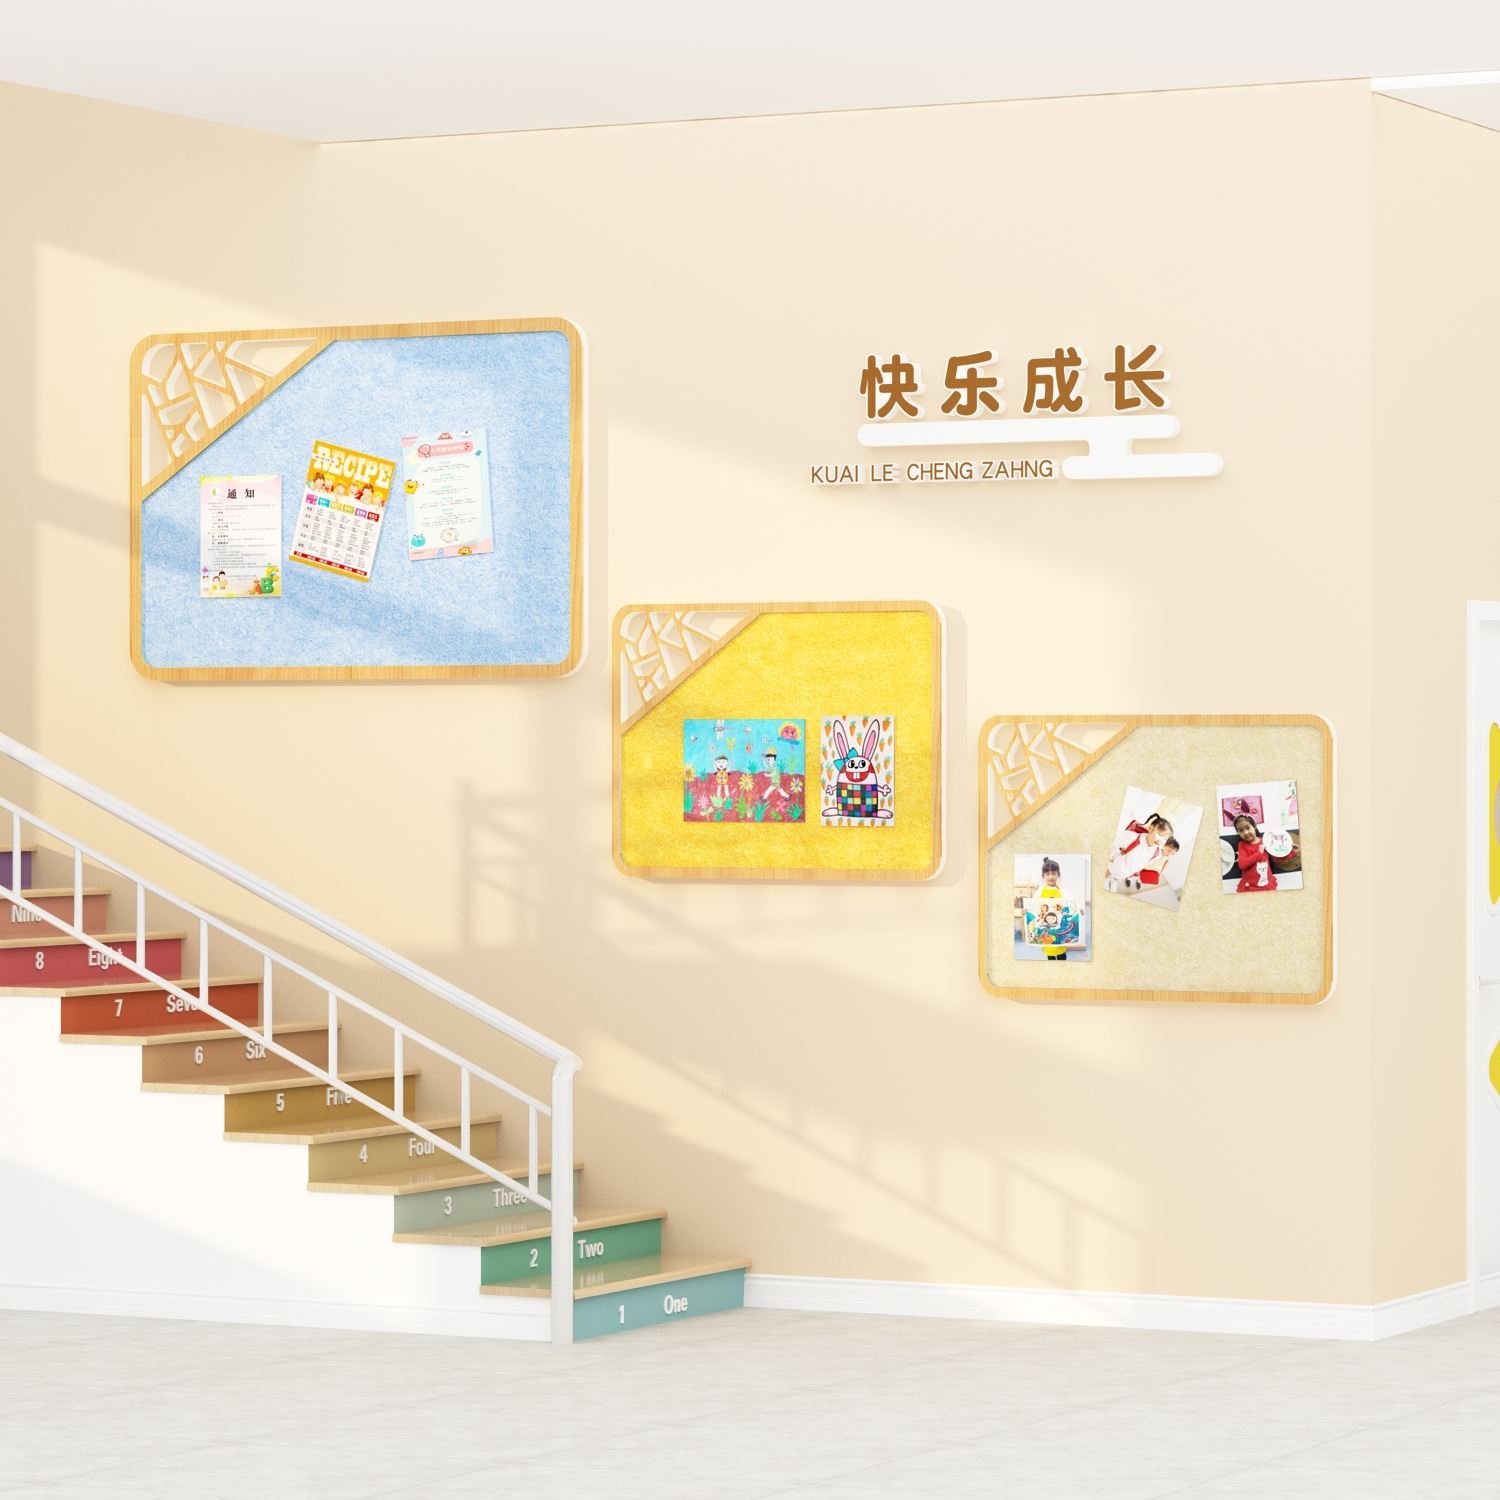 新款毛毡板幼儿园环创走廊过道墙面装饰材料成品公告栏展示板文化-图2